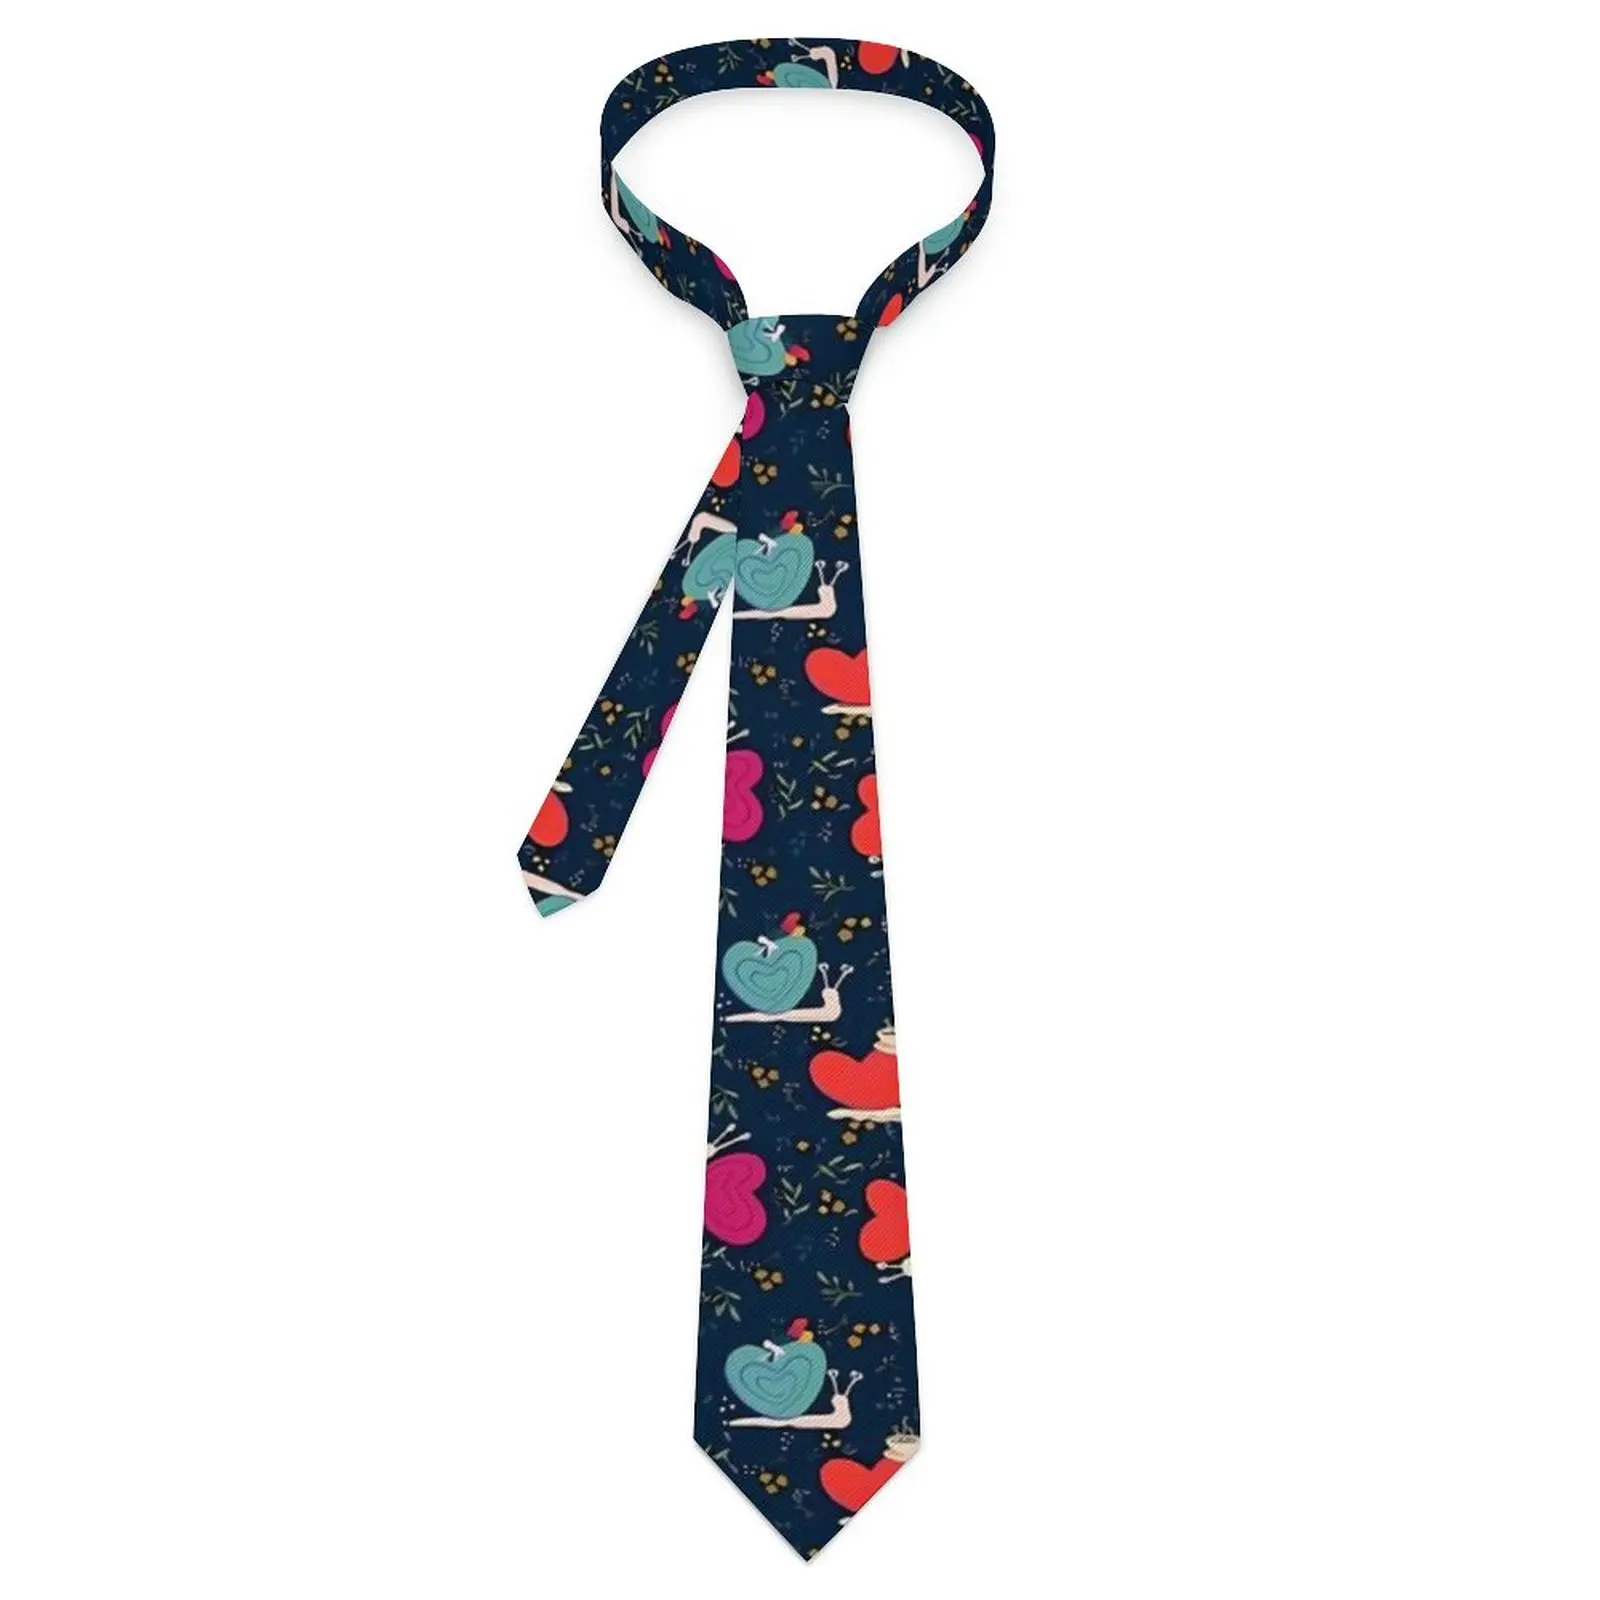 

Забавный галстук с улиткой, повседневная одежда с животным принтом, галстуки для шеи для мужчин и женщин, Забавный галстук для воротника с графическим рисунком, отличное качество